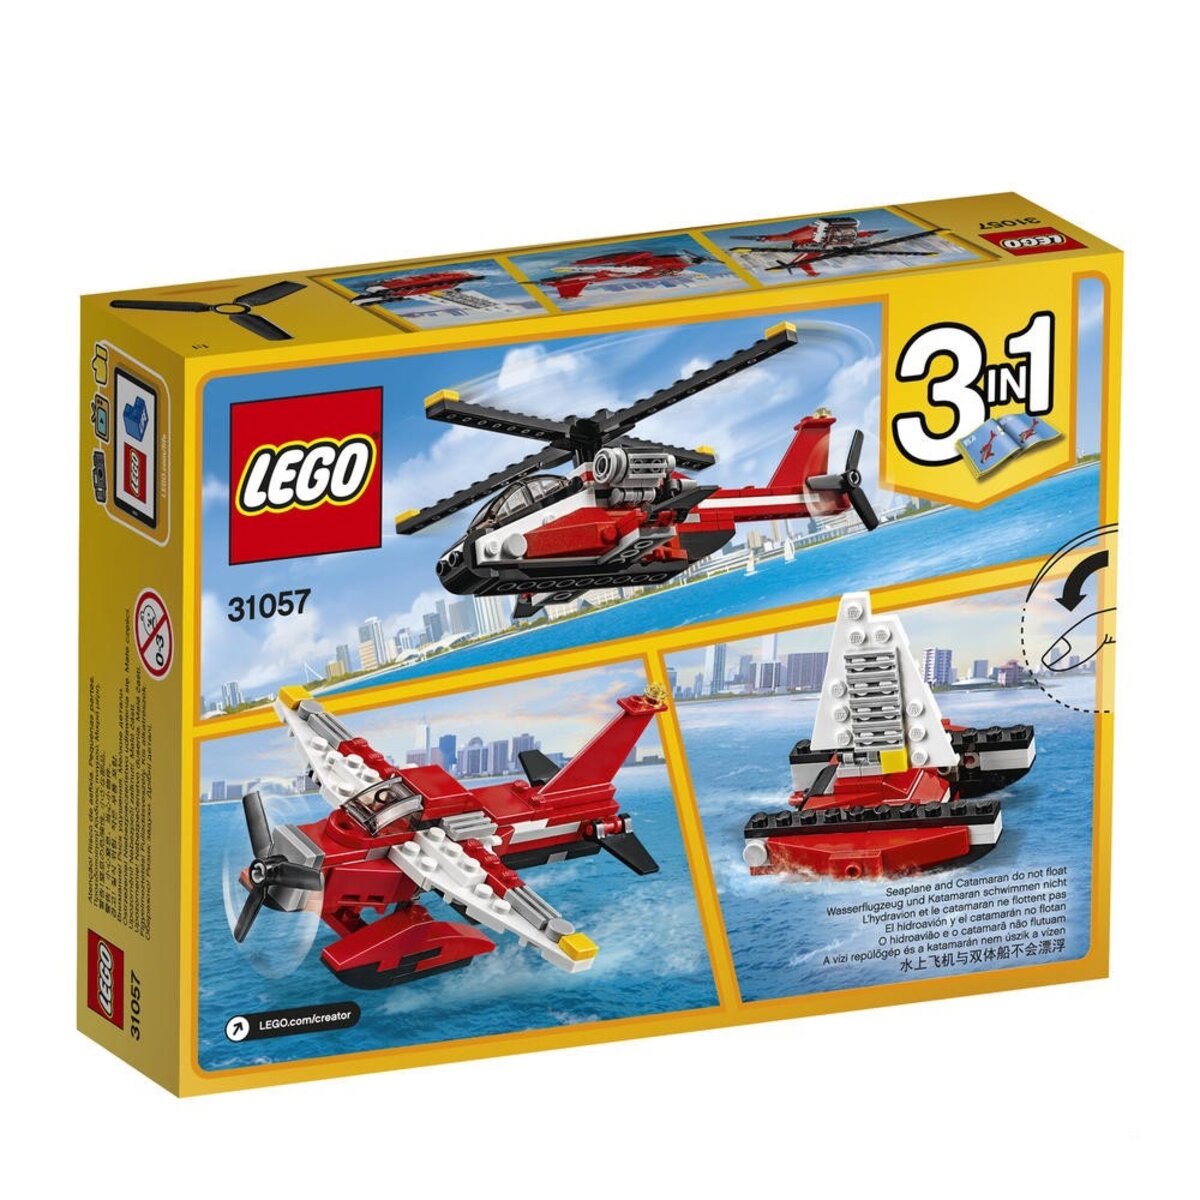 LEGO 31057 Creator - L'Hélicoptère Rouge - La Poste